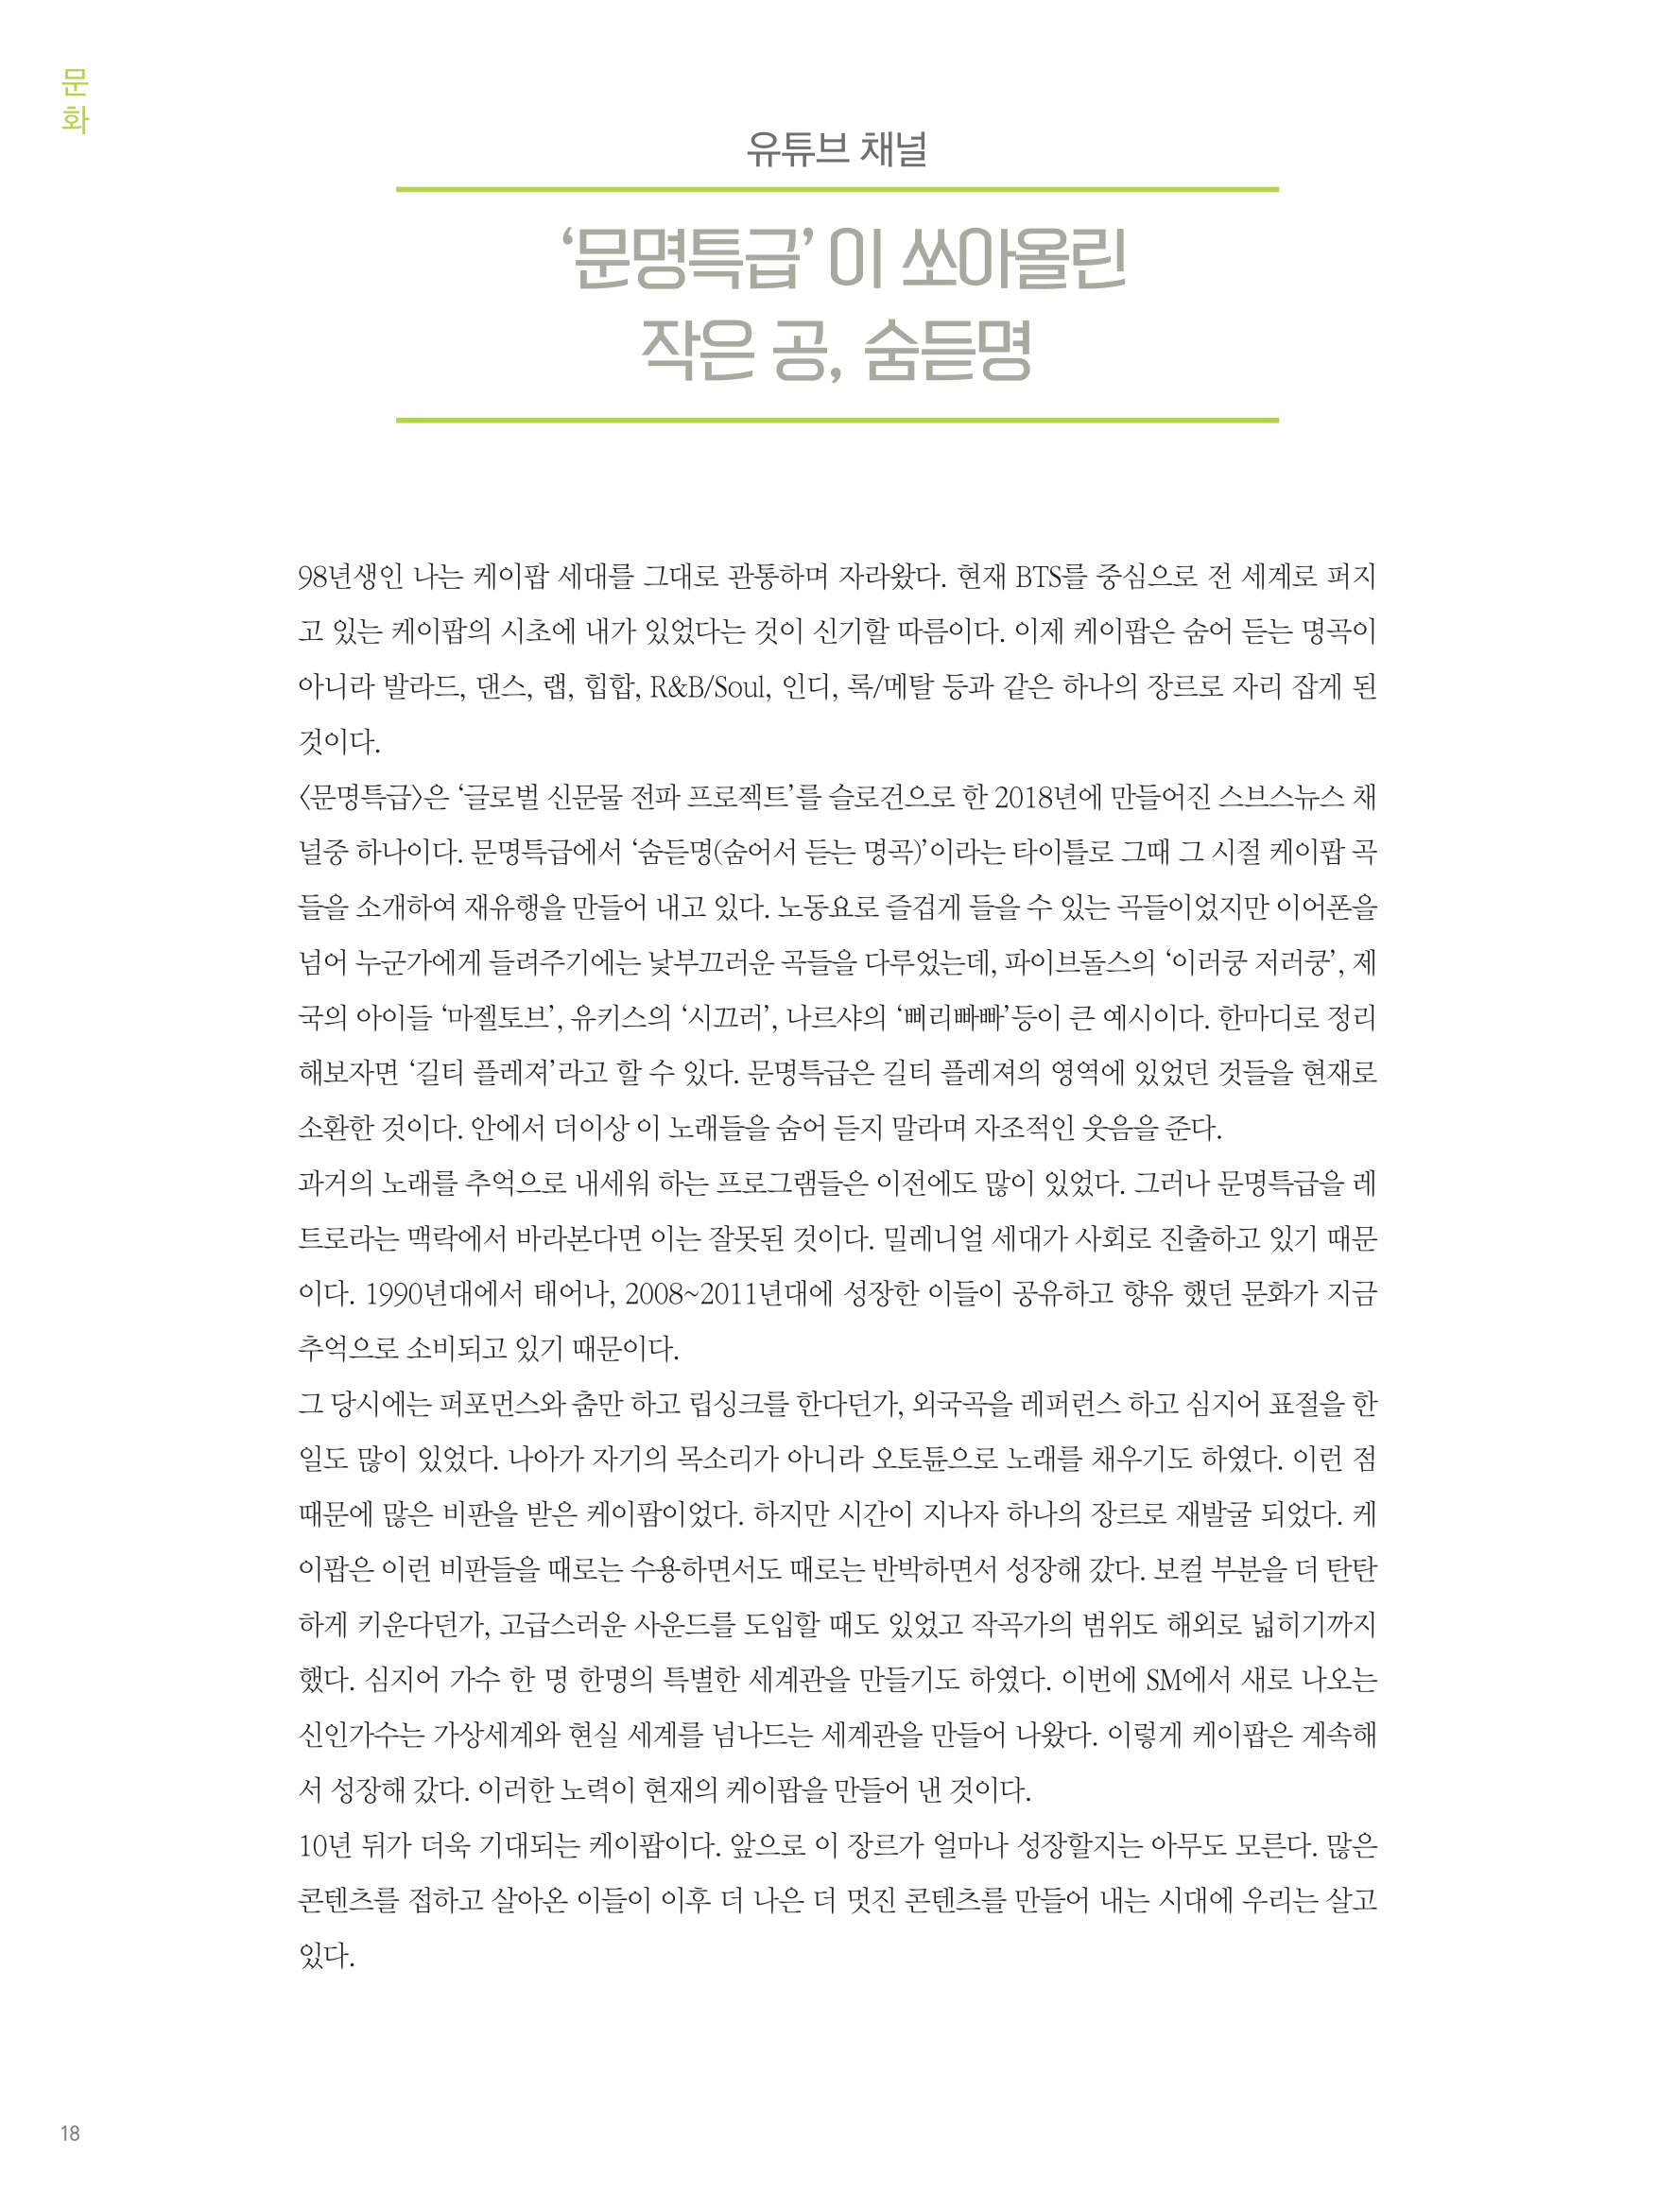 뜻새김 신문 76호 17